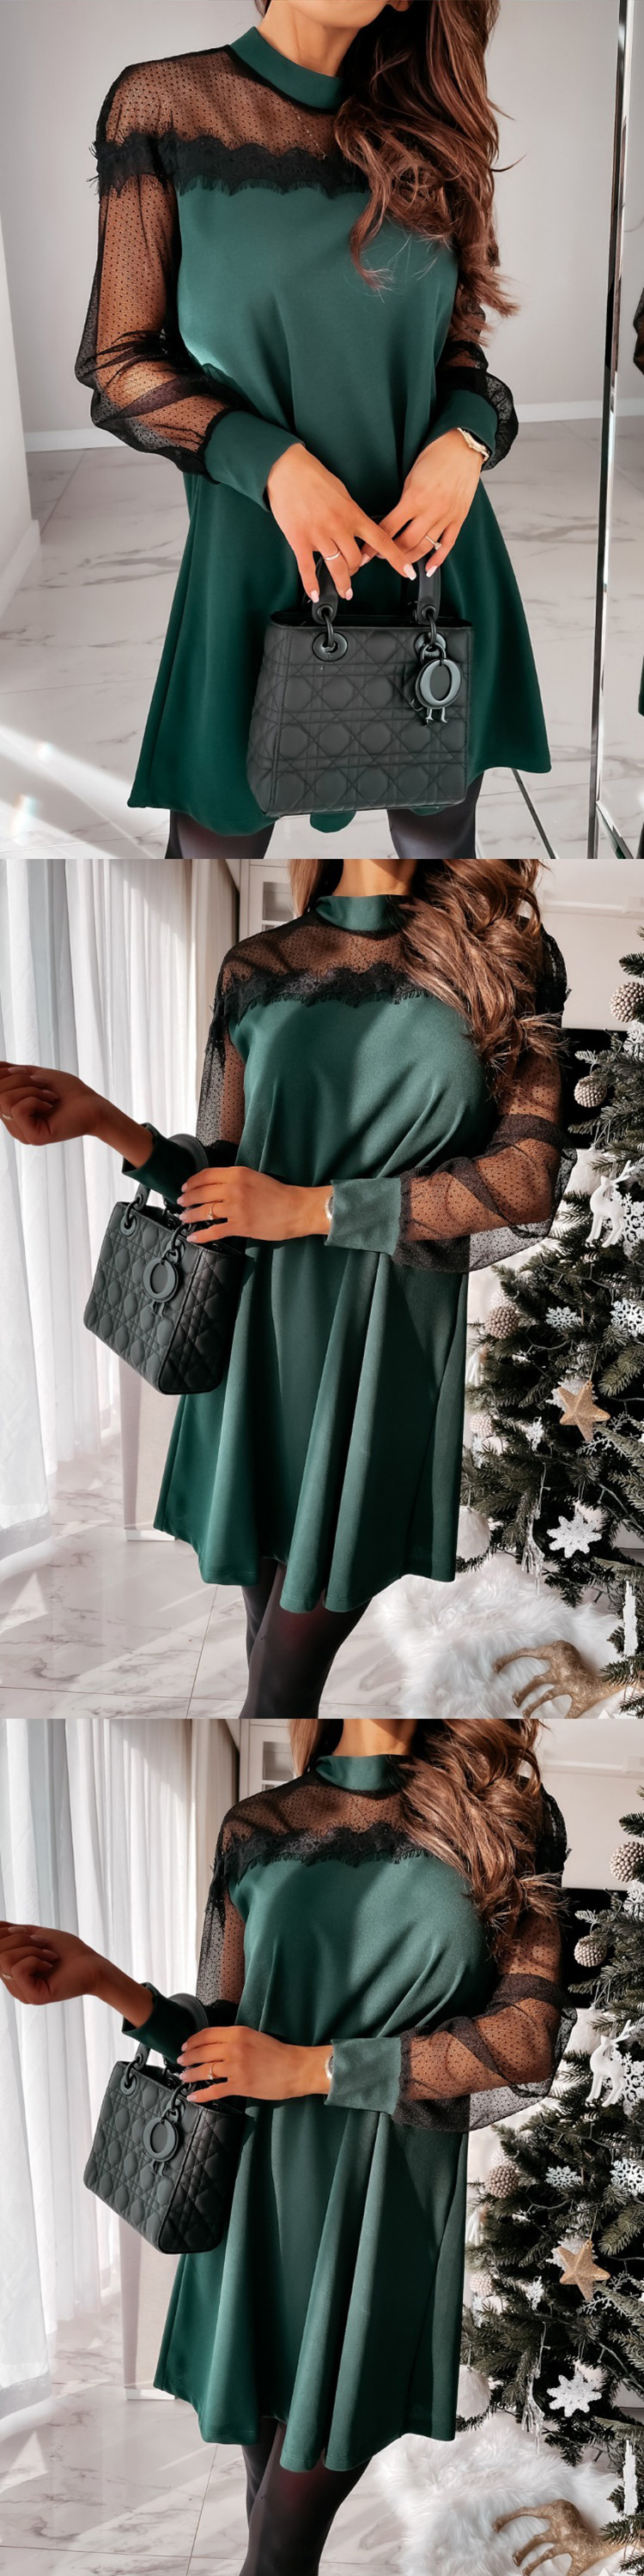 Гламурное платье с рукавами зеленый цвет